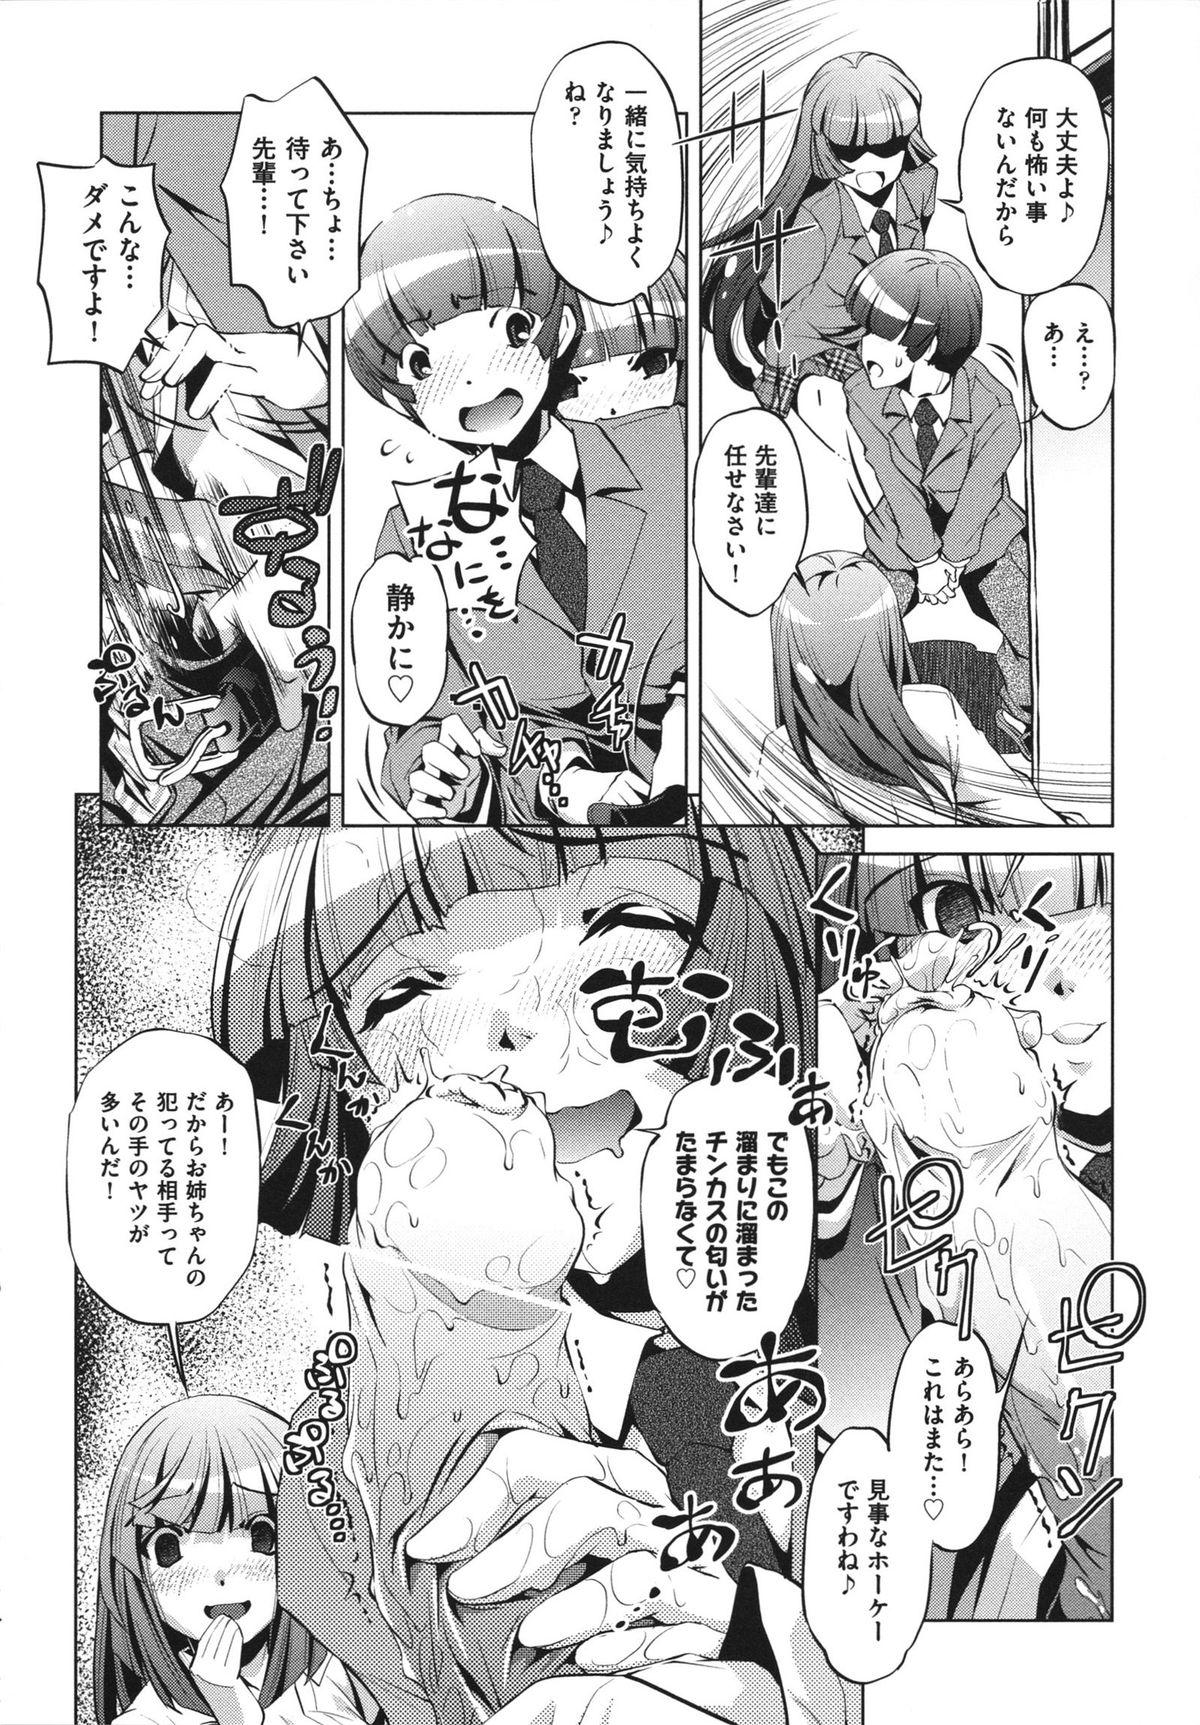 [Ootori Ryuuji] Shokushu wa Yawarakana Chibusa ni Makitsuki Onna-tachi no Ana wo Kakimidasu - Feeler coils around a soft breast and violates women's hole. 139